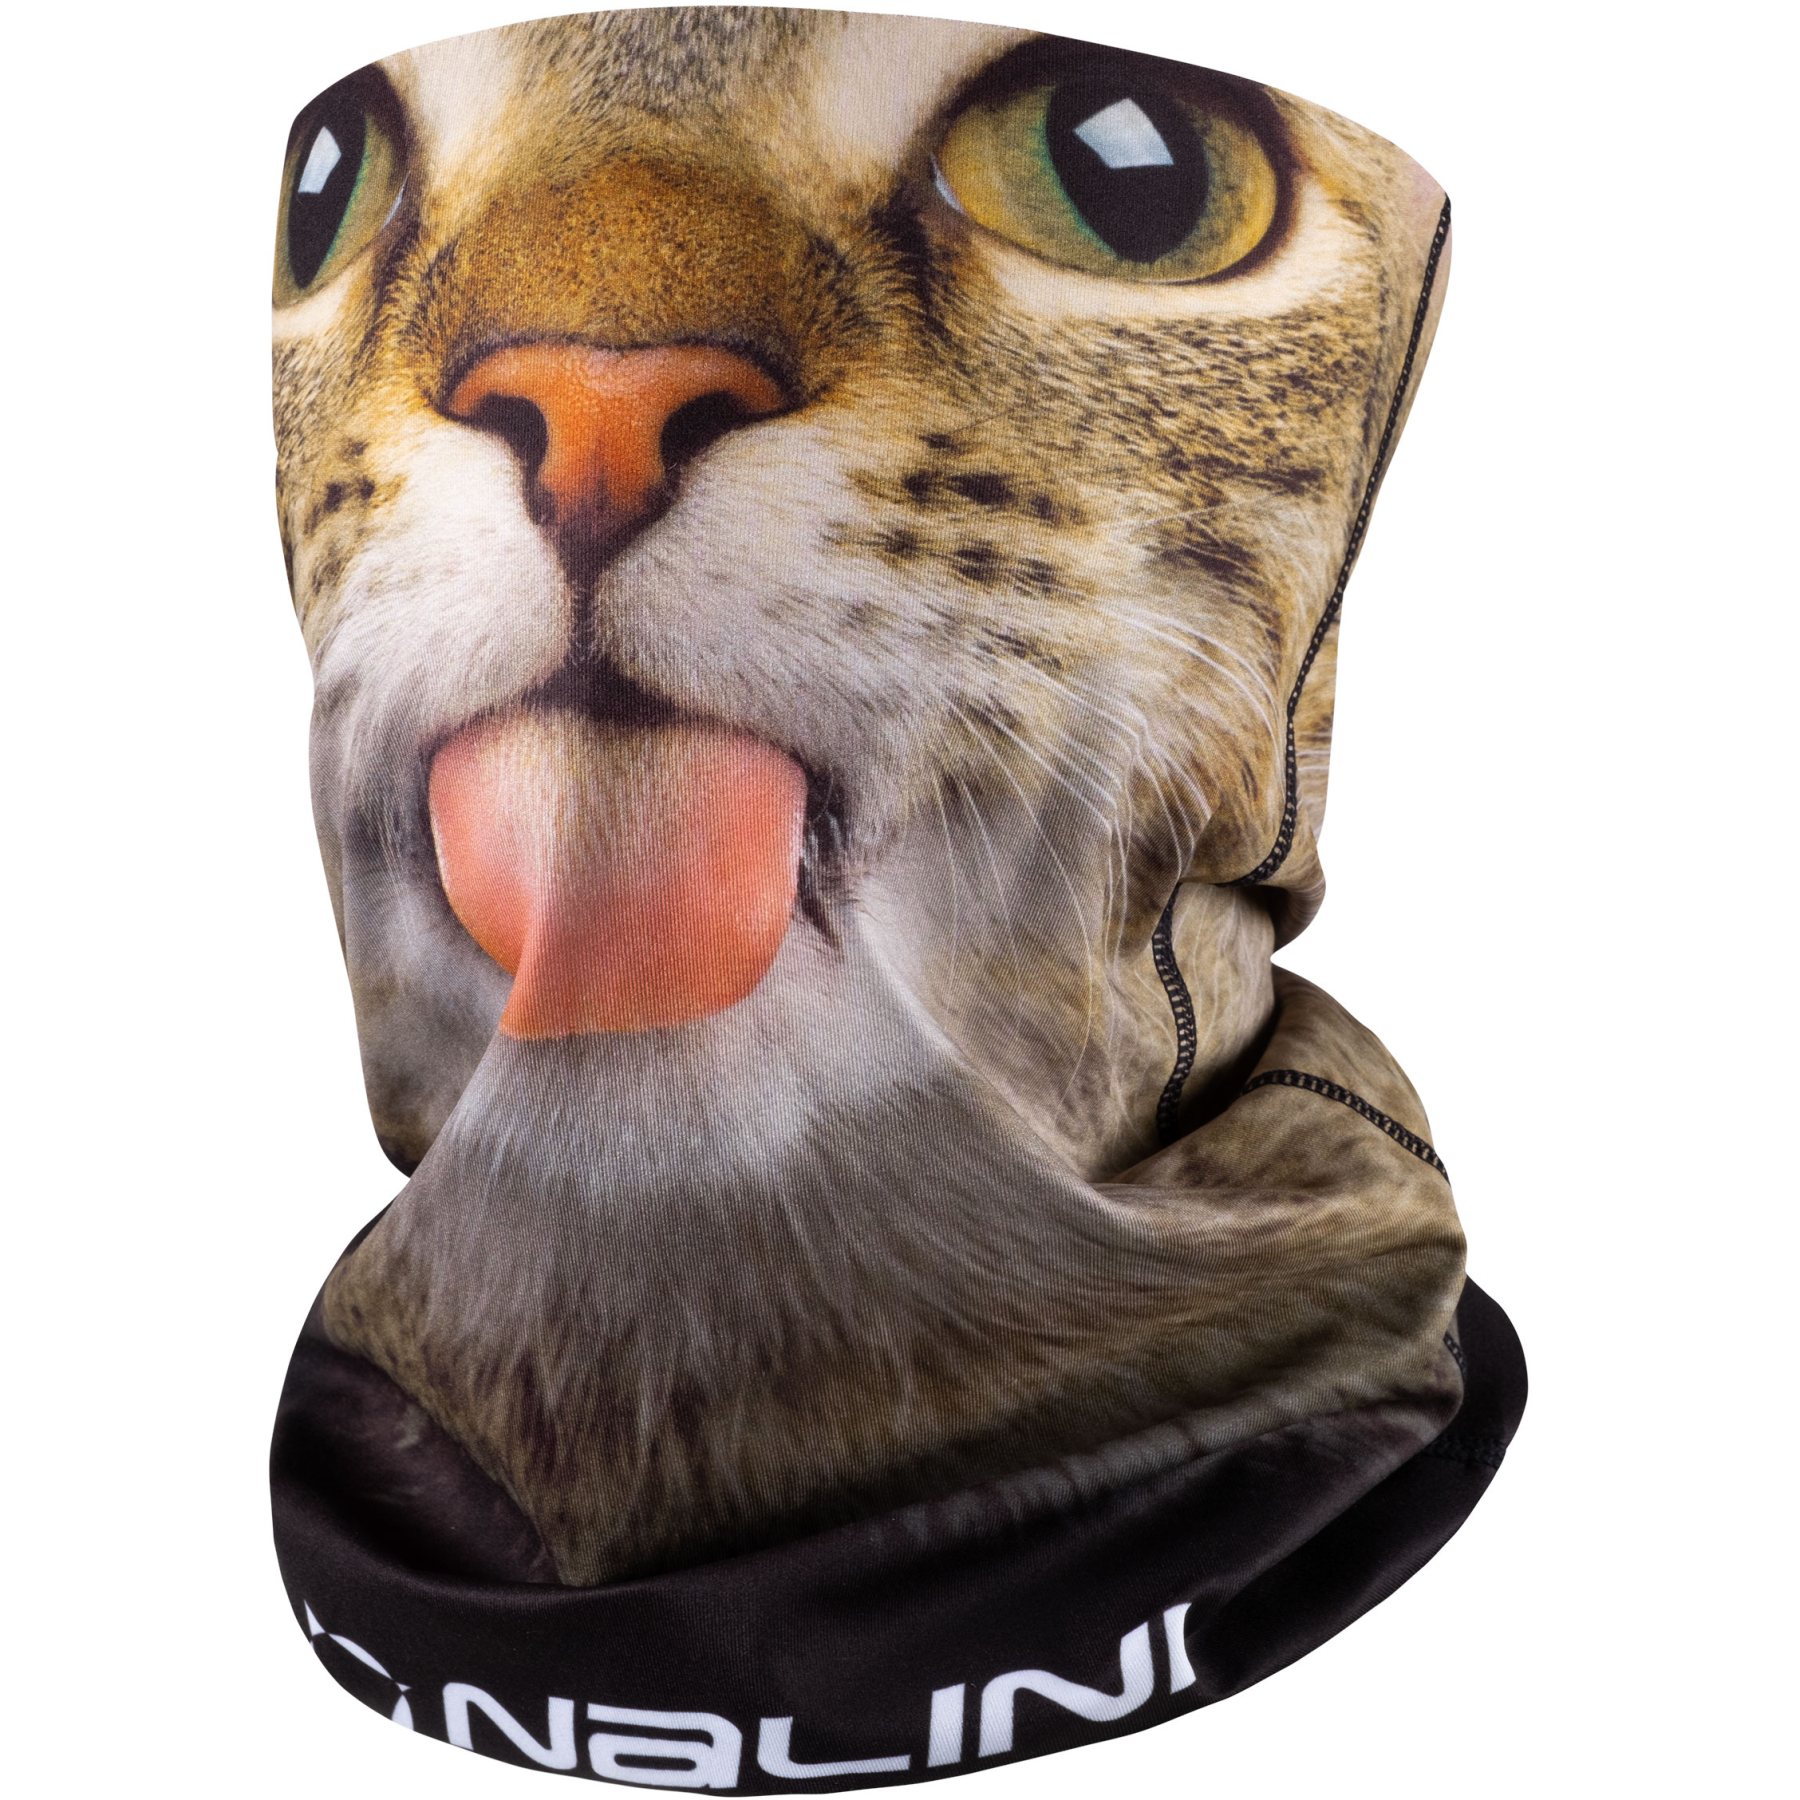 Produktbild von Nalini New Winter Schlauchschal - cat 4020